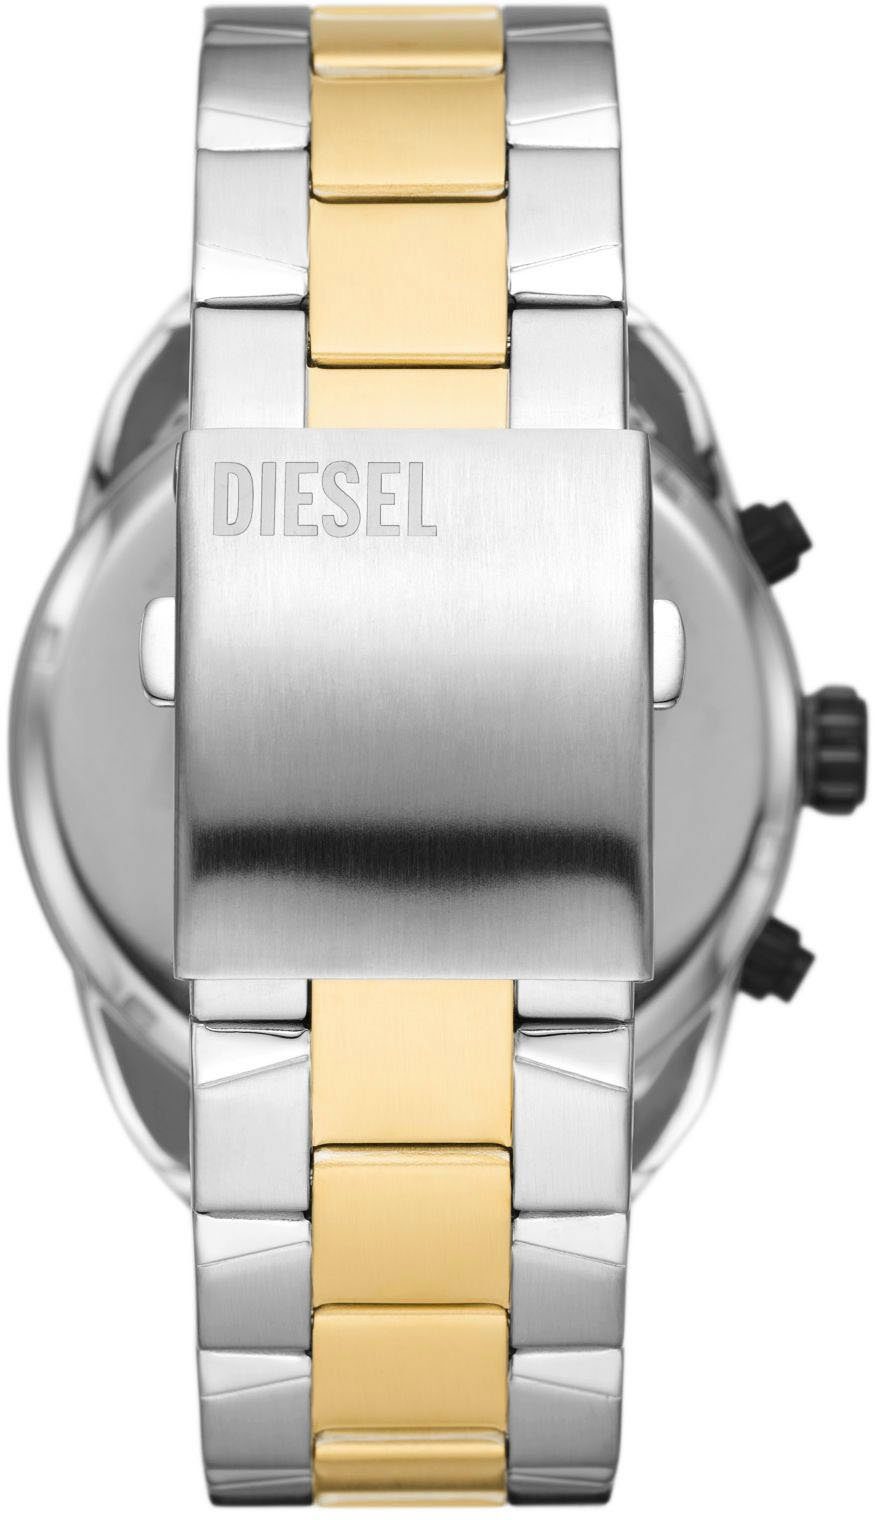 Chronograph Diesel SPIKED, DZ4627